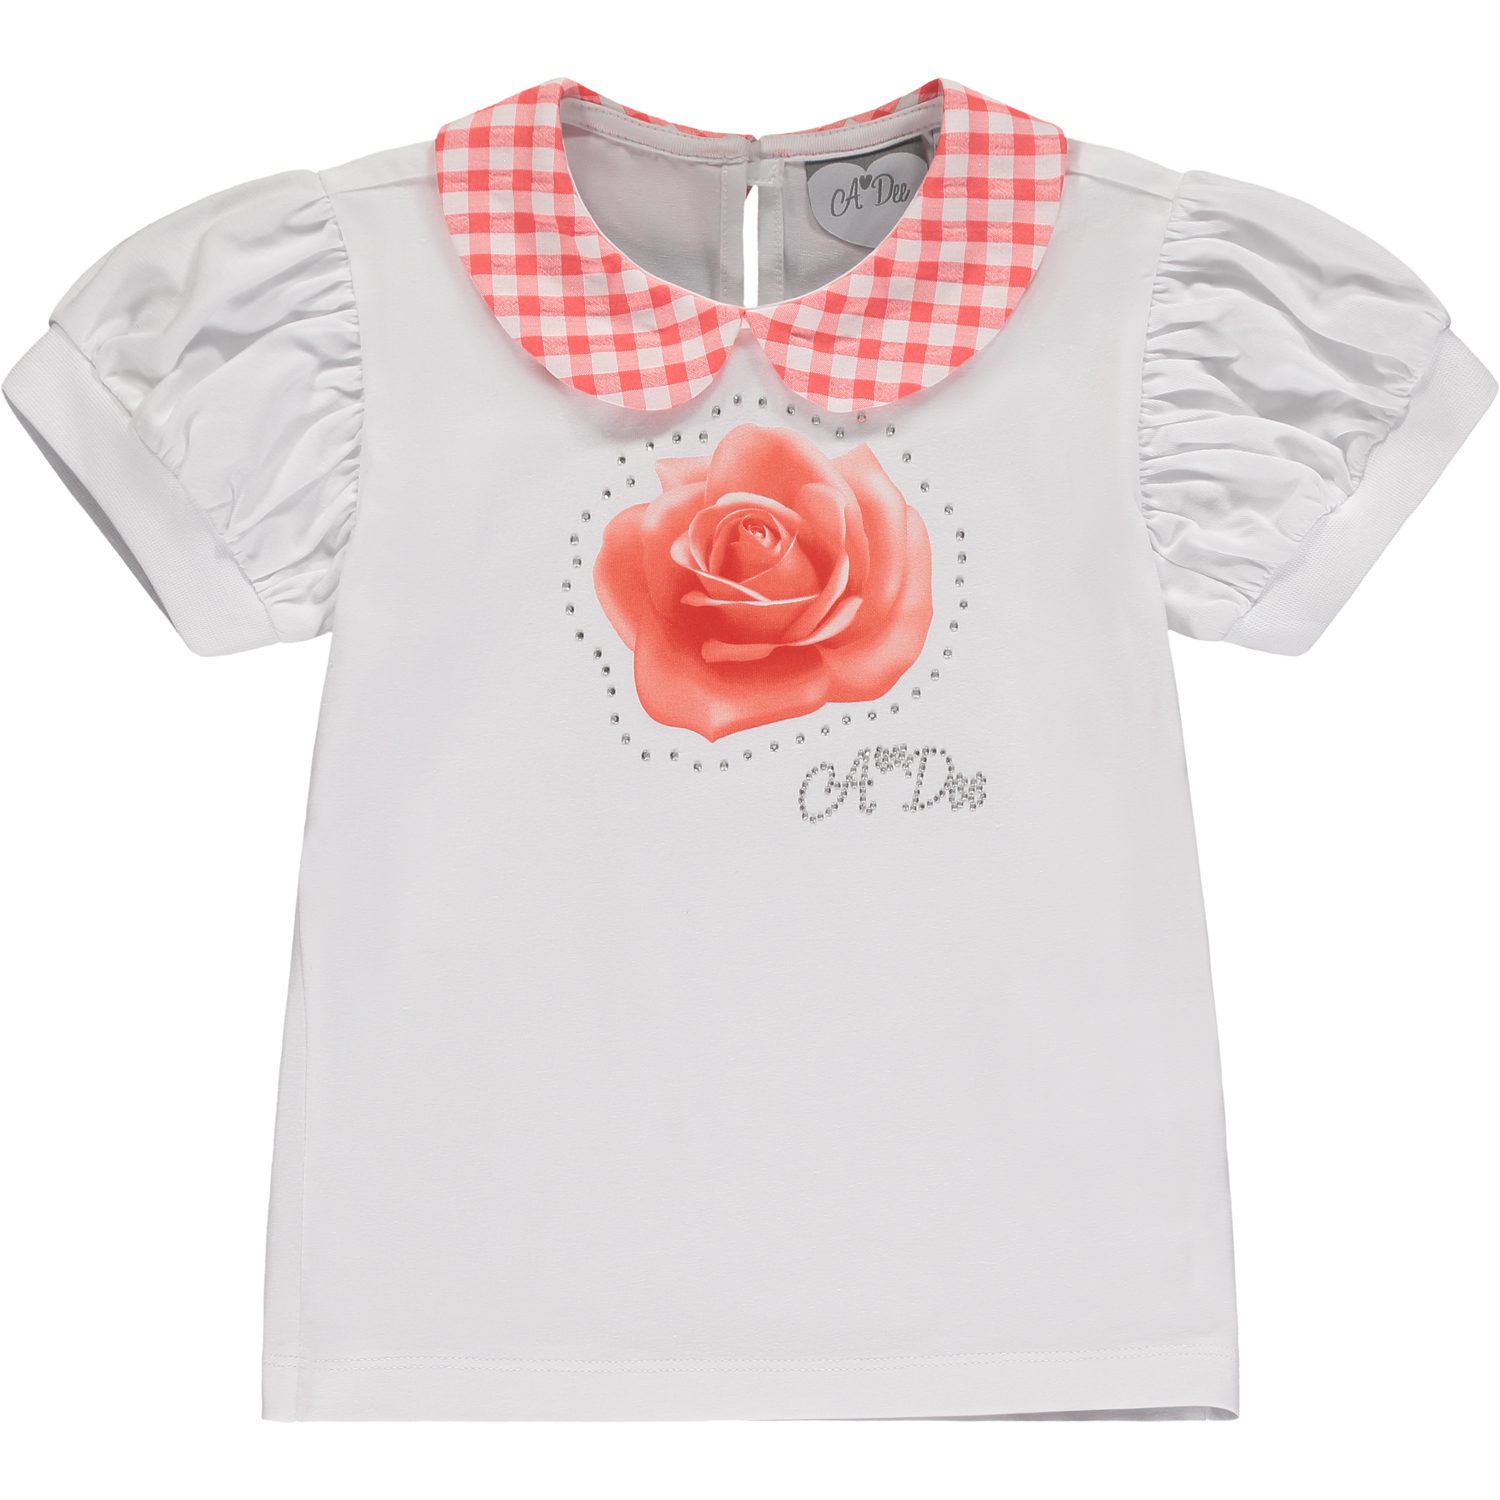 A’dee Yvonne rozen shirt rok set shirt